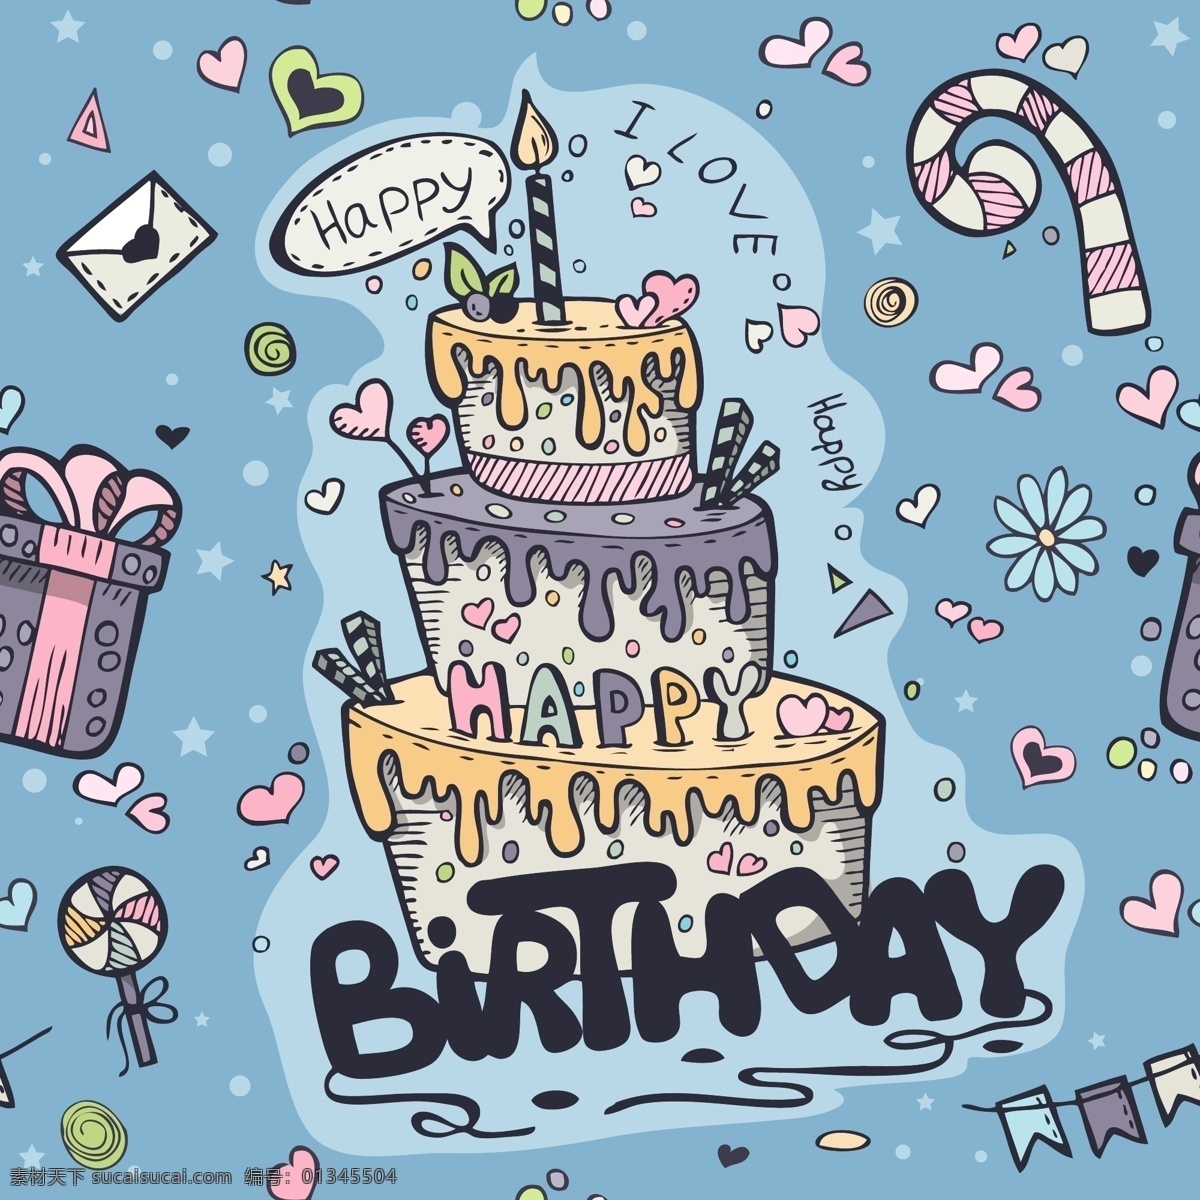 卡通 个性 生日贺卡 矢量 背景 生日 蛋糕 贺卡 矢量素材 背景素材 装饰 设计素材